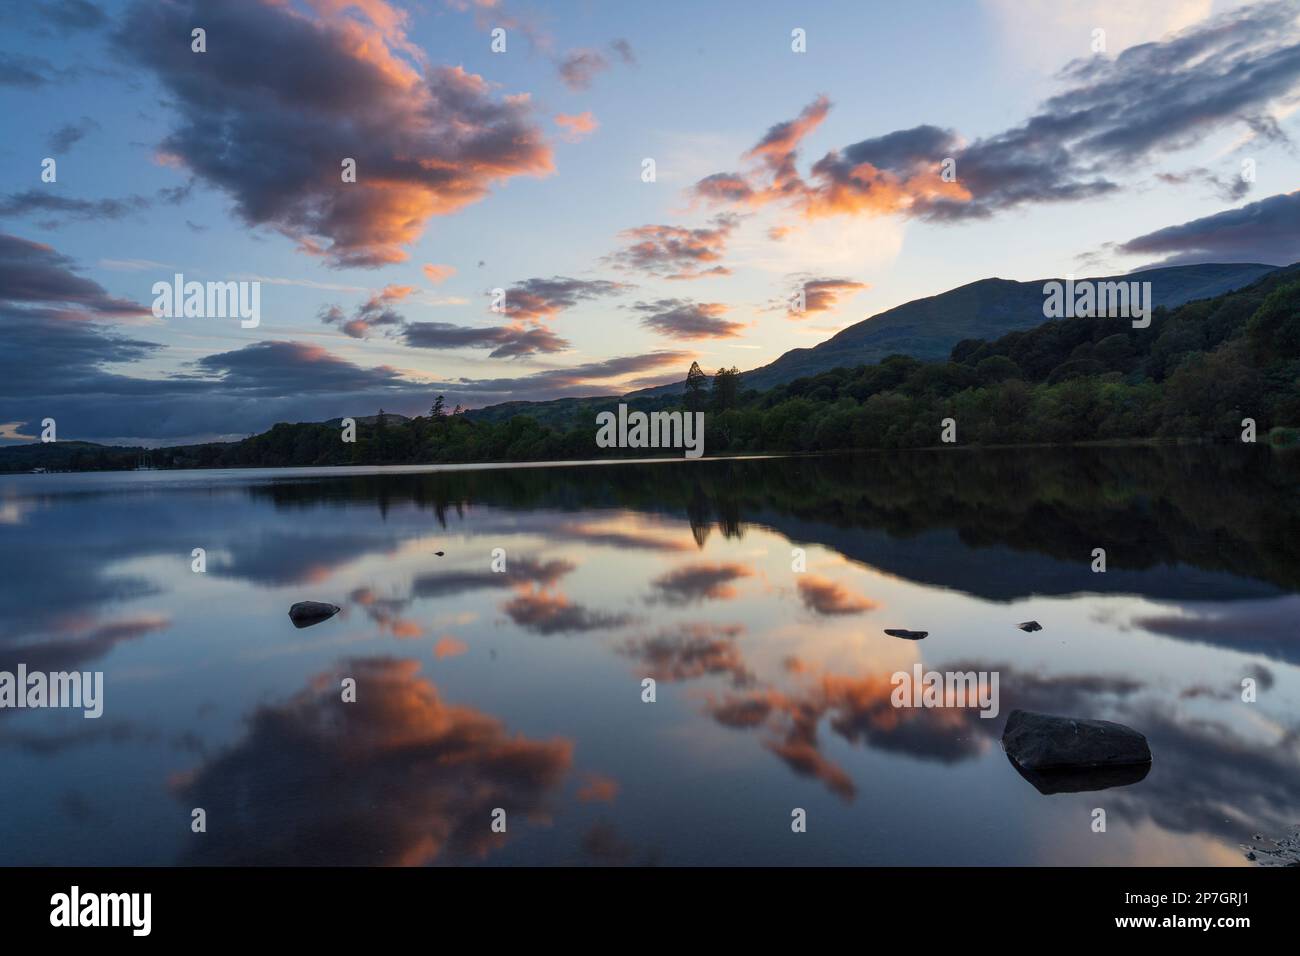 Angleterre, Cumbria, parc national de Lake District. Les collines du Lakeland et un coucher de soleil coloré se reflètent sur la face fixe de Coniston Water. Banque D'Images